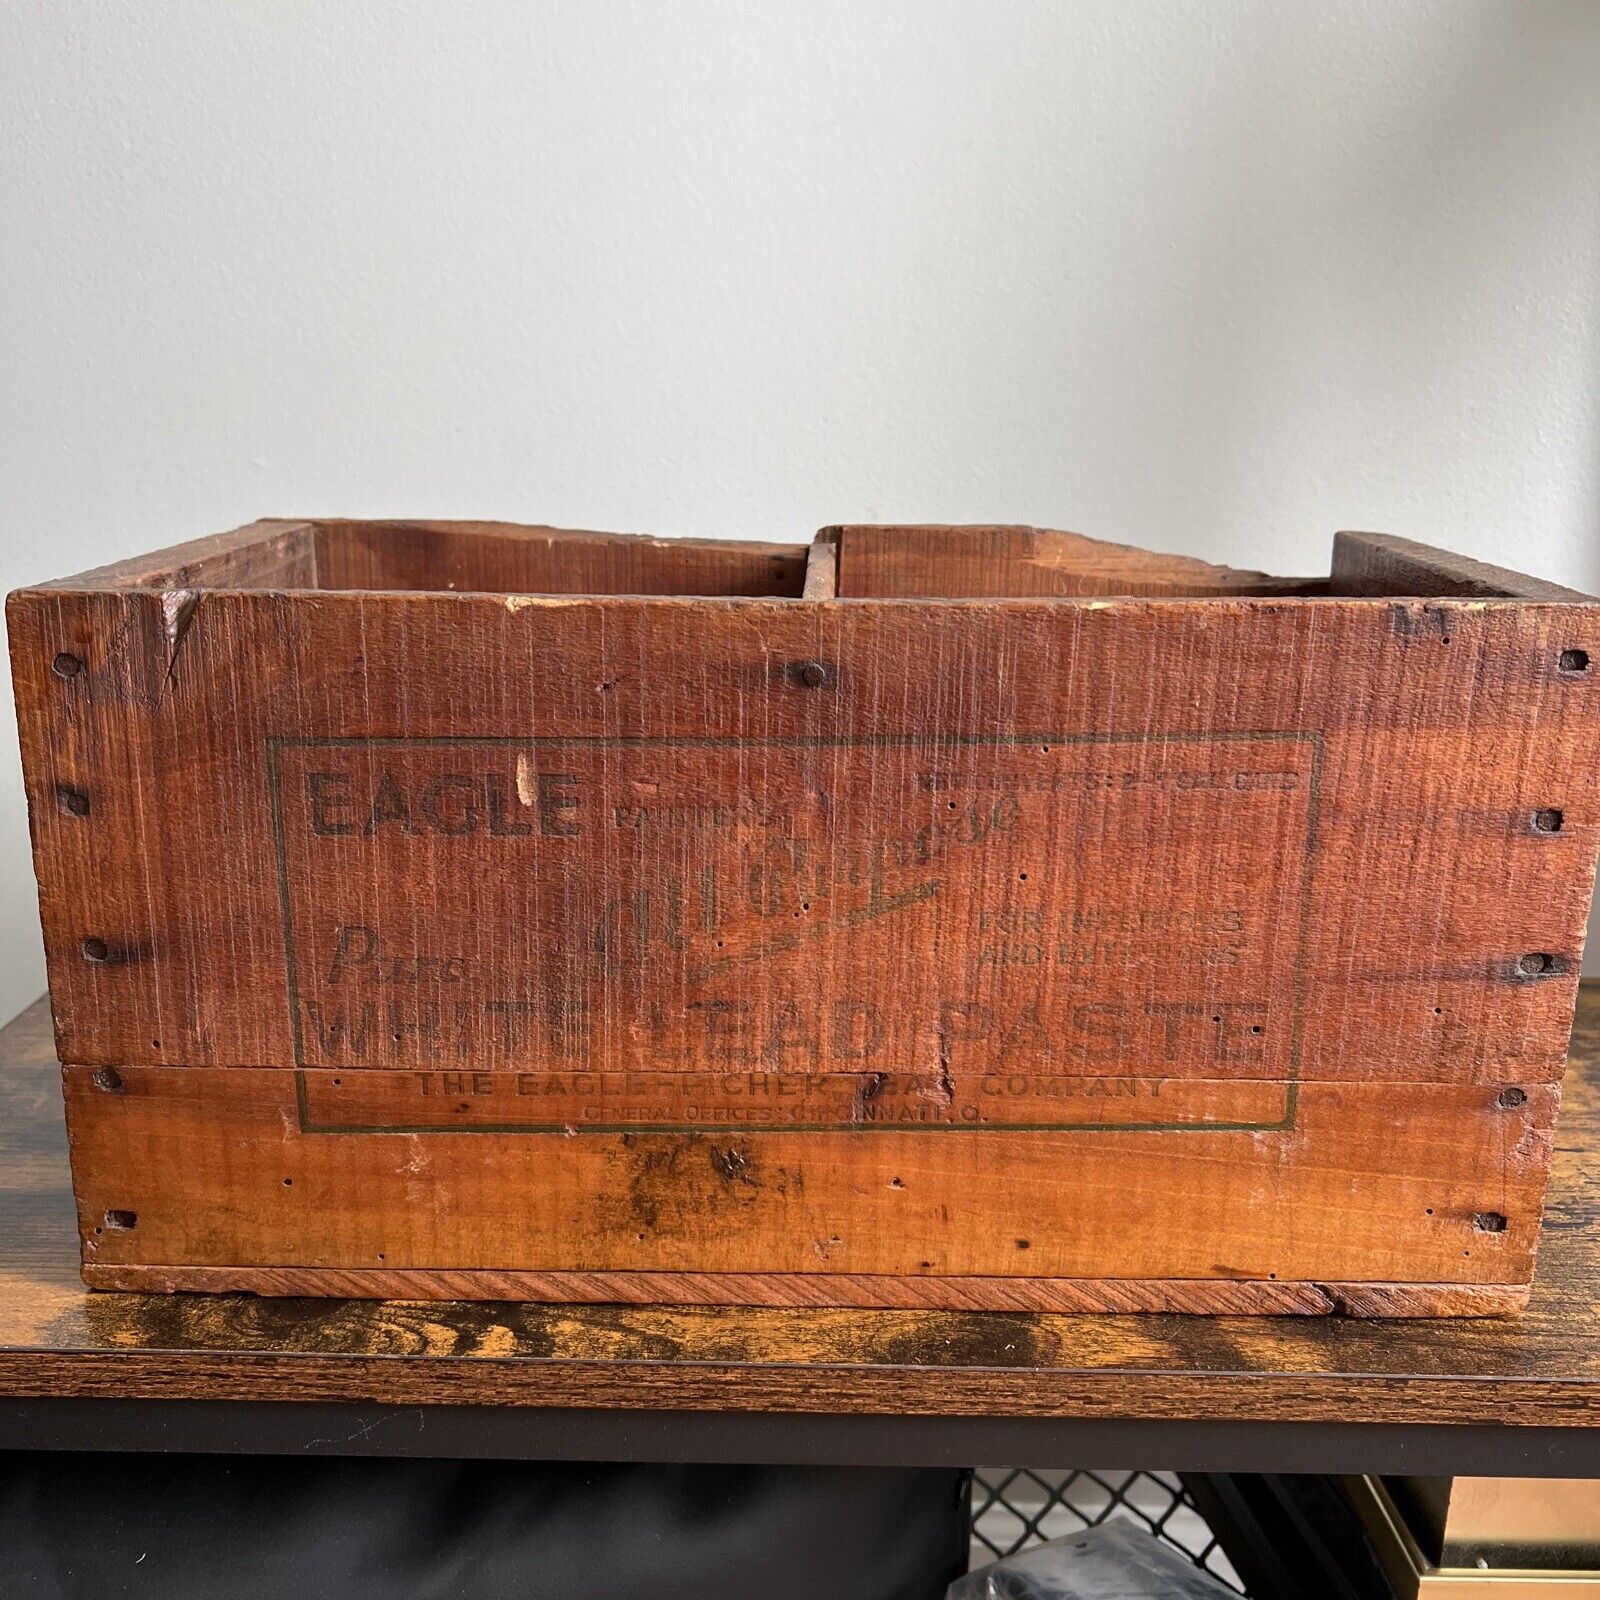 Rare Eagle Picher Lead Company Wood Crate Box White Lead paste Cincinnati OH